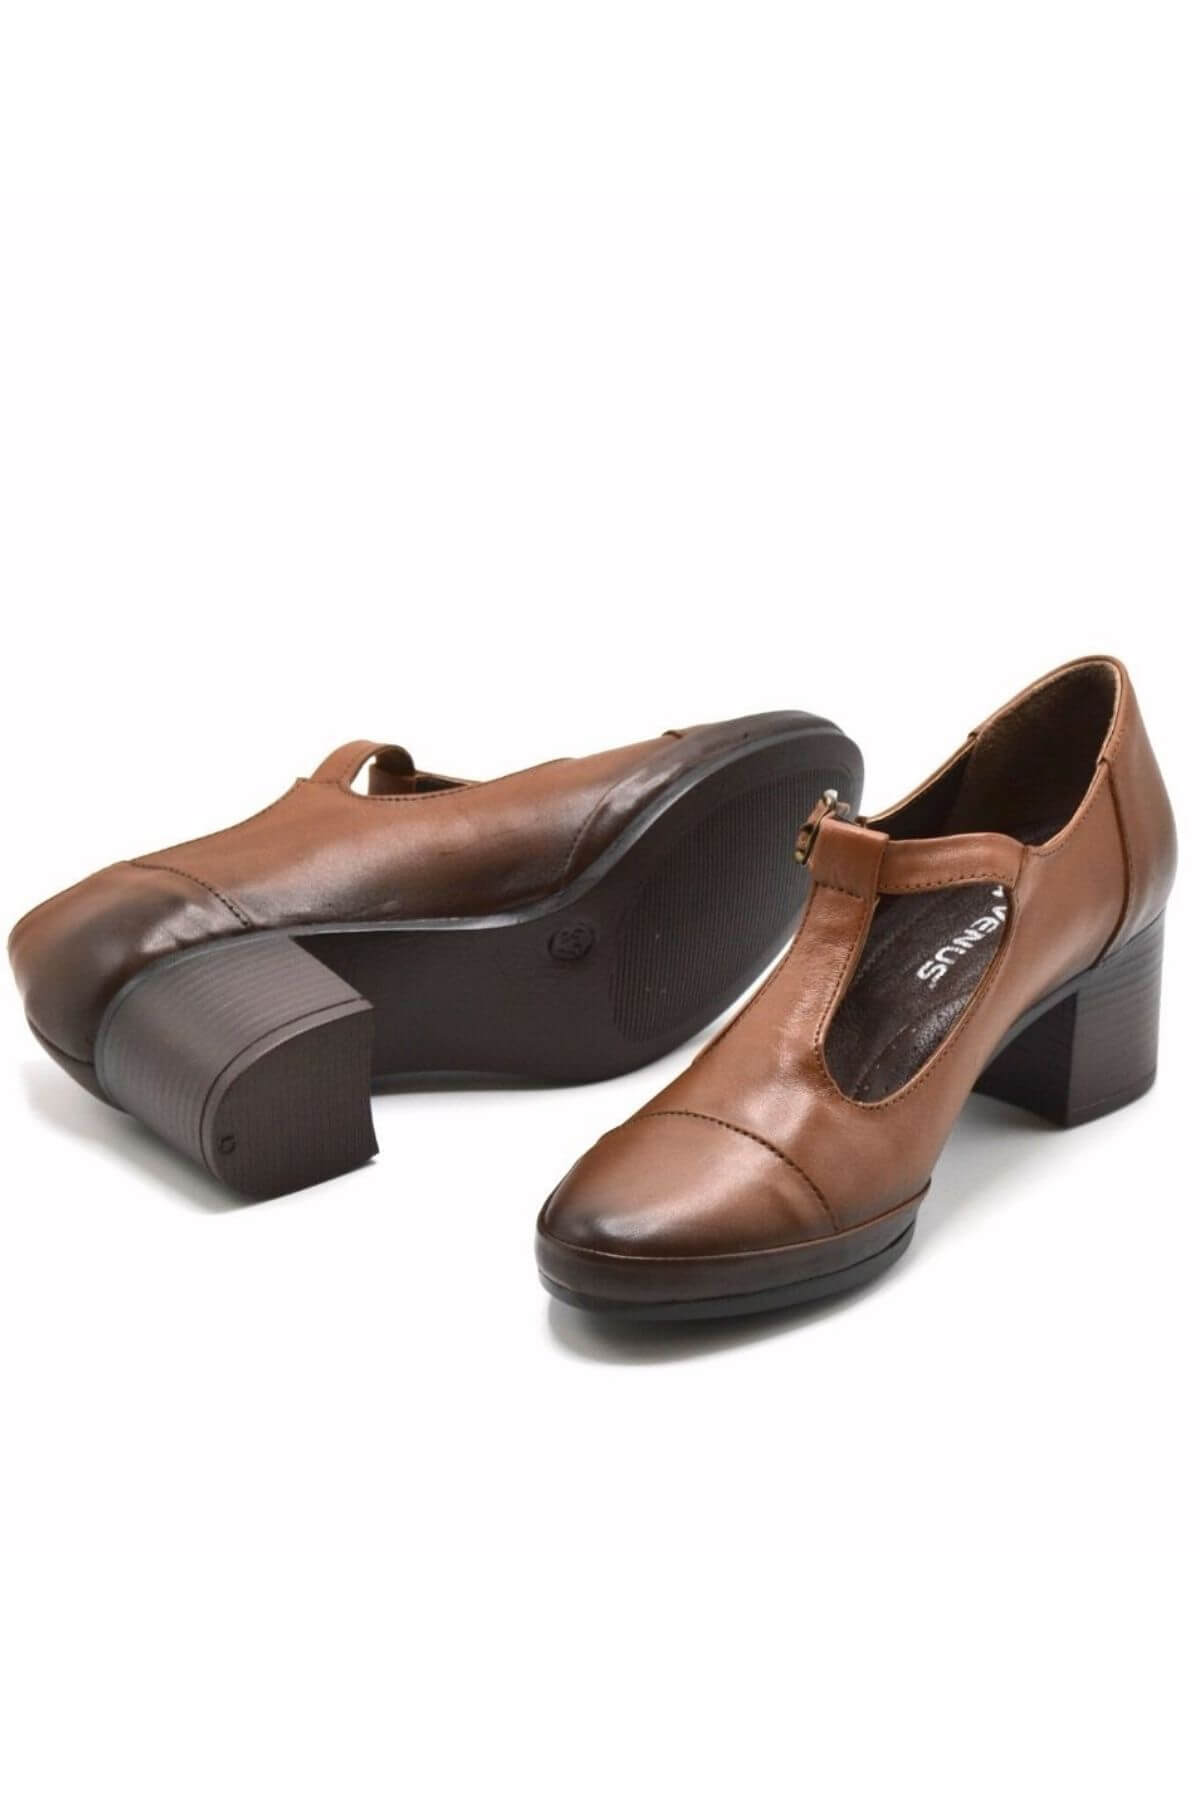 Kadın Topuklu Deri Ayakkabı Taba 1911954K